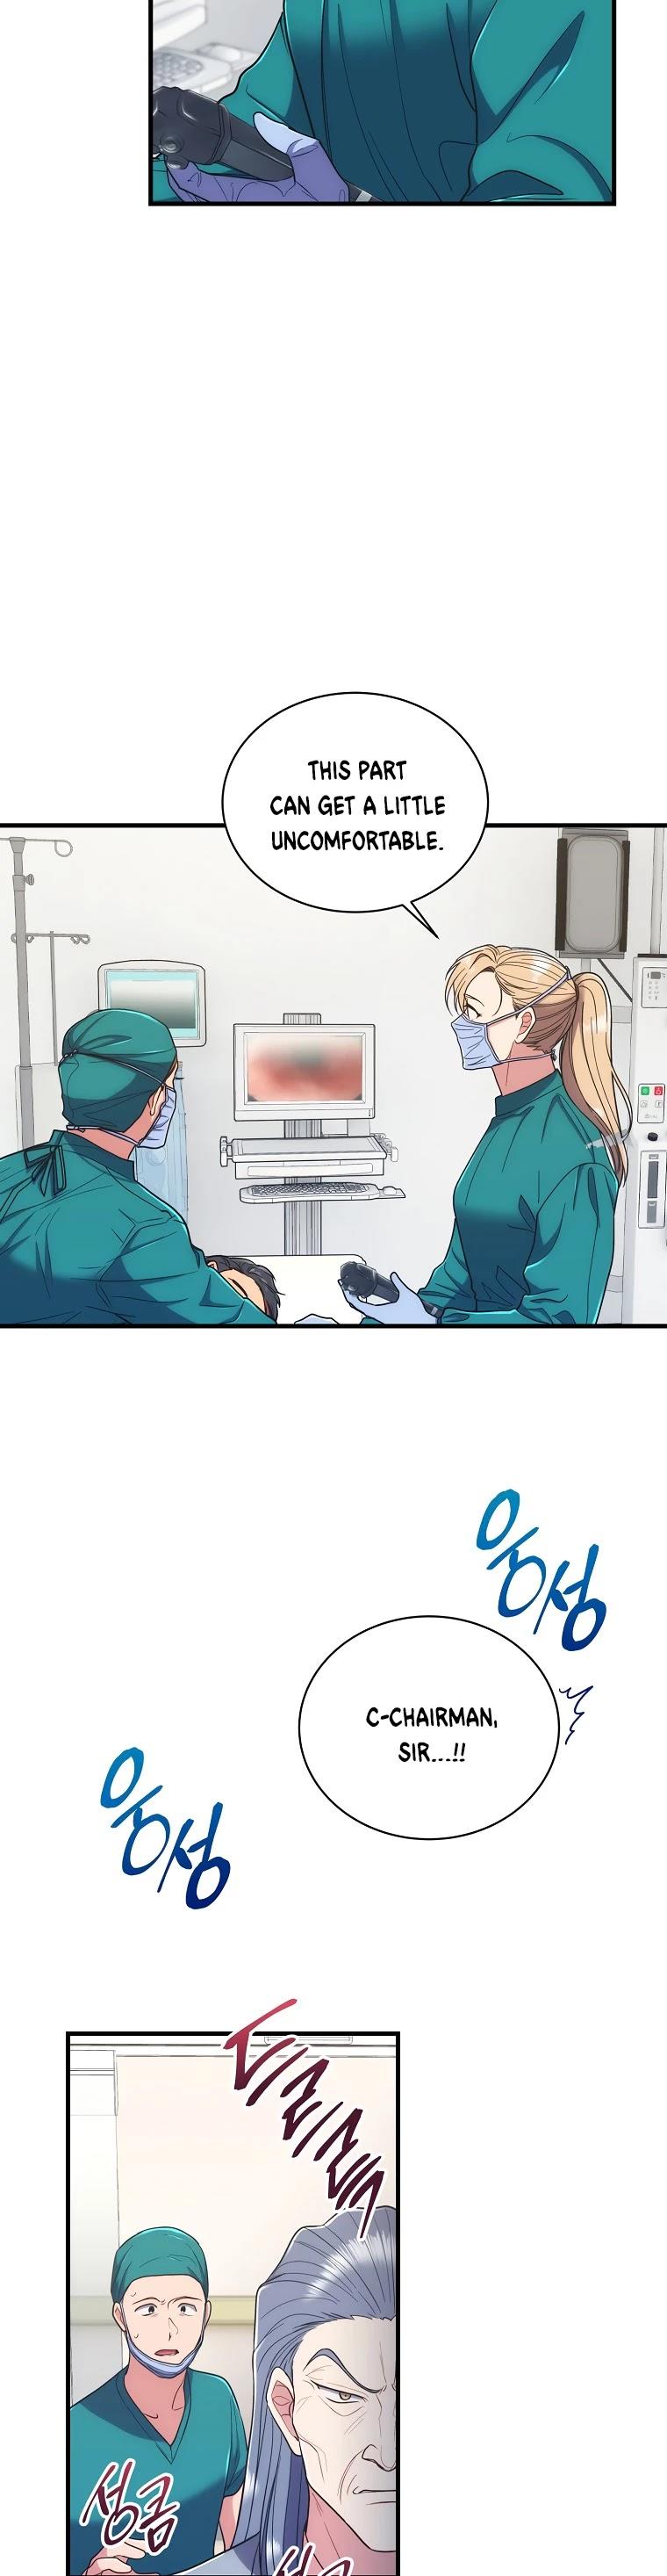 Medical Return Chapter 128 page 8 - Mangakakalot